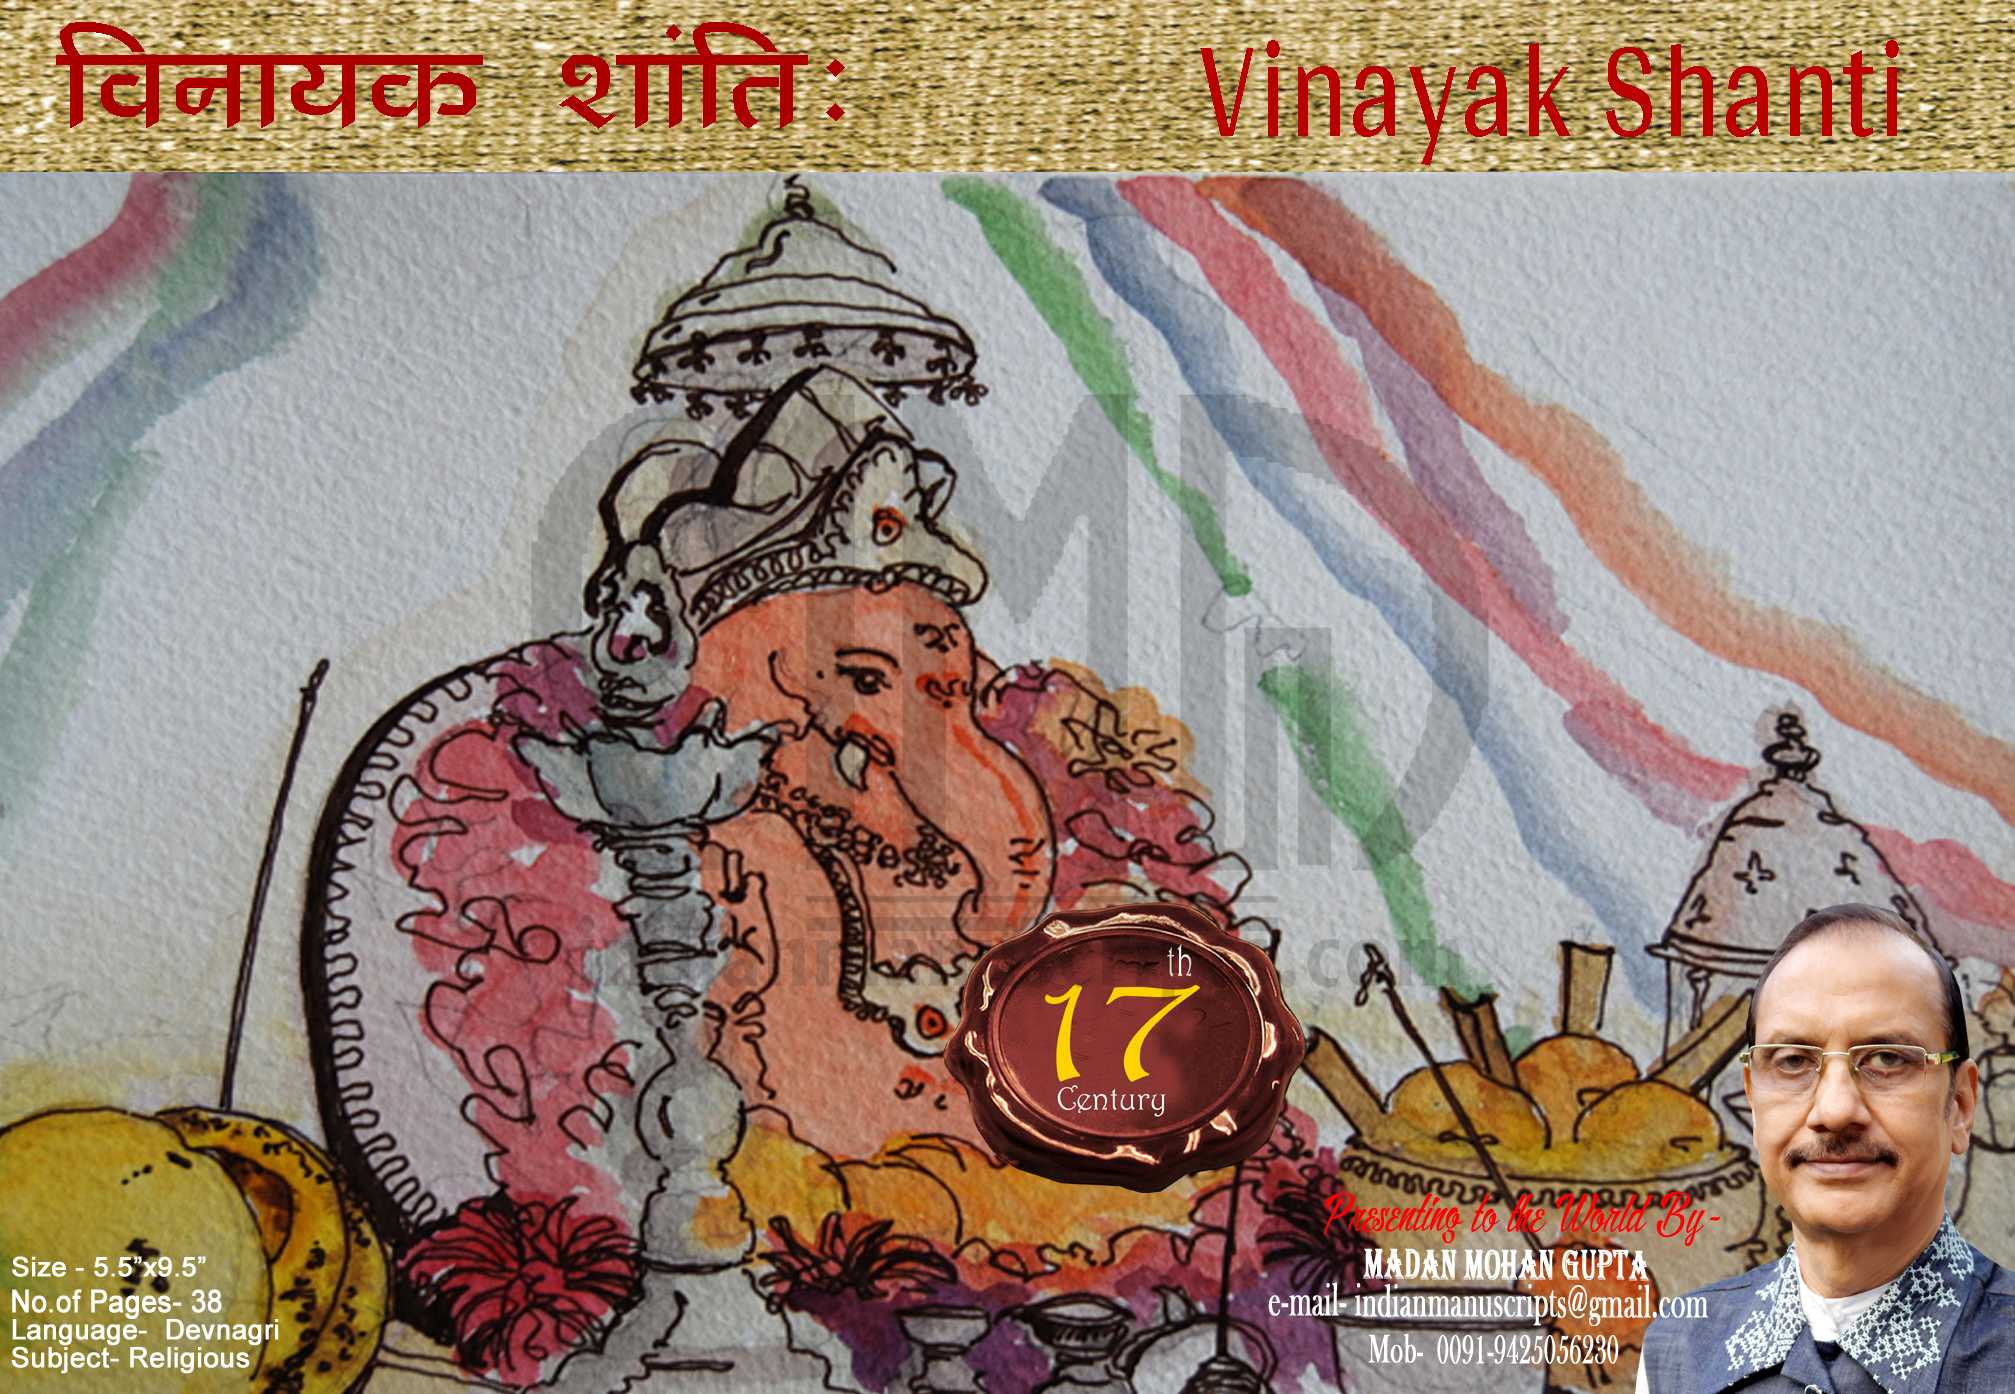 Vinayak Shanti